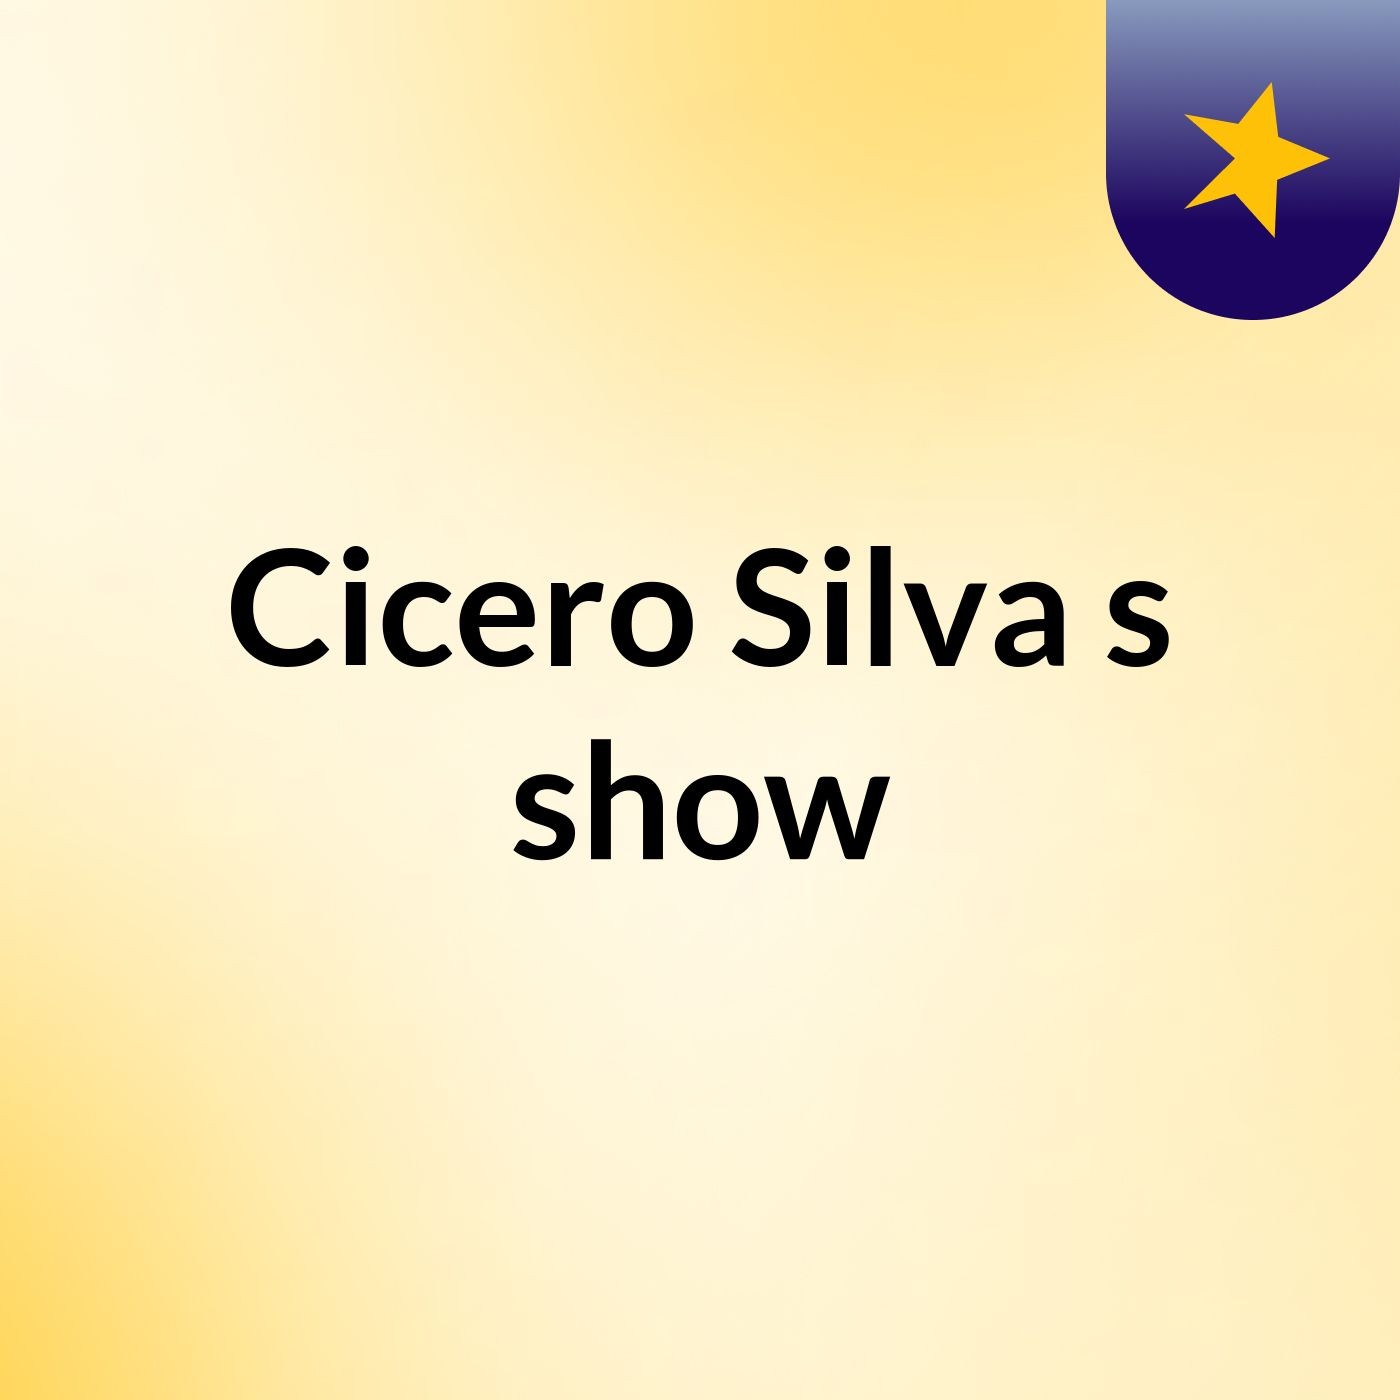 Cicero Silva's show